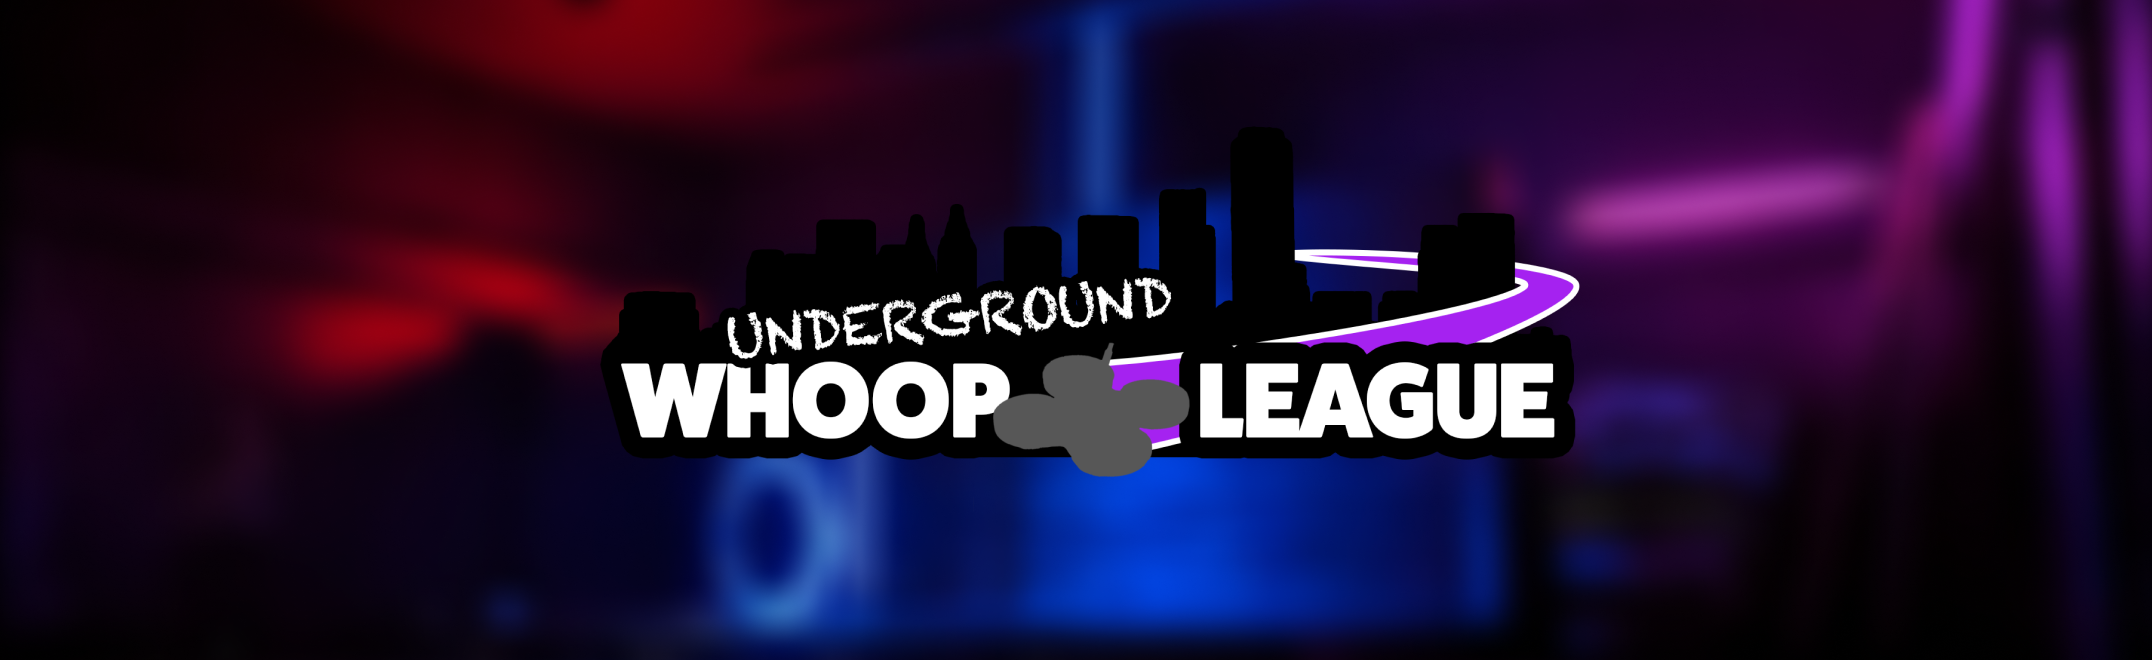 Underground Whoop League Spec Racing